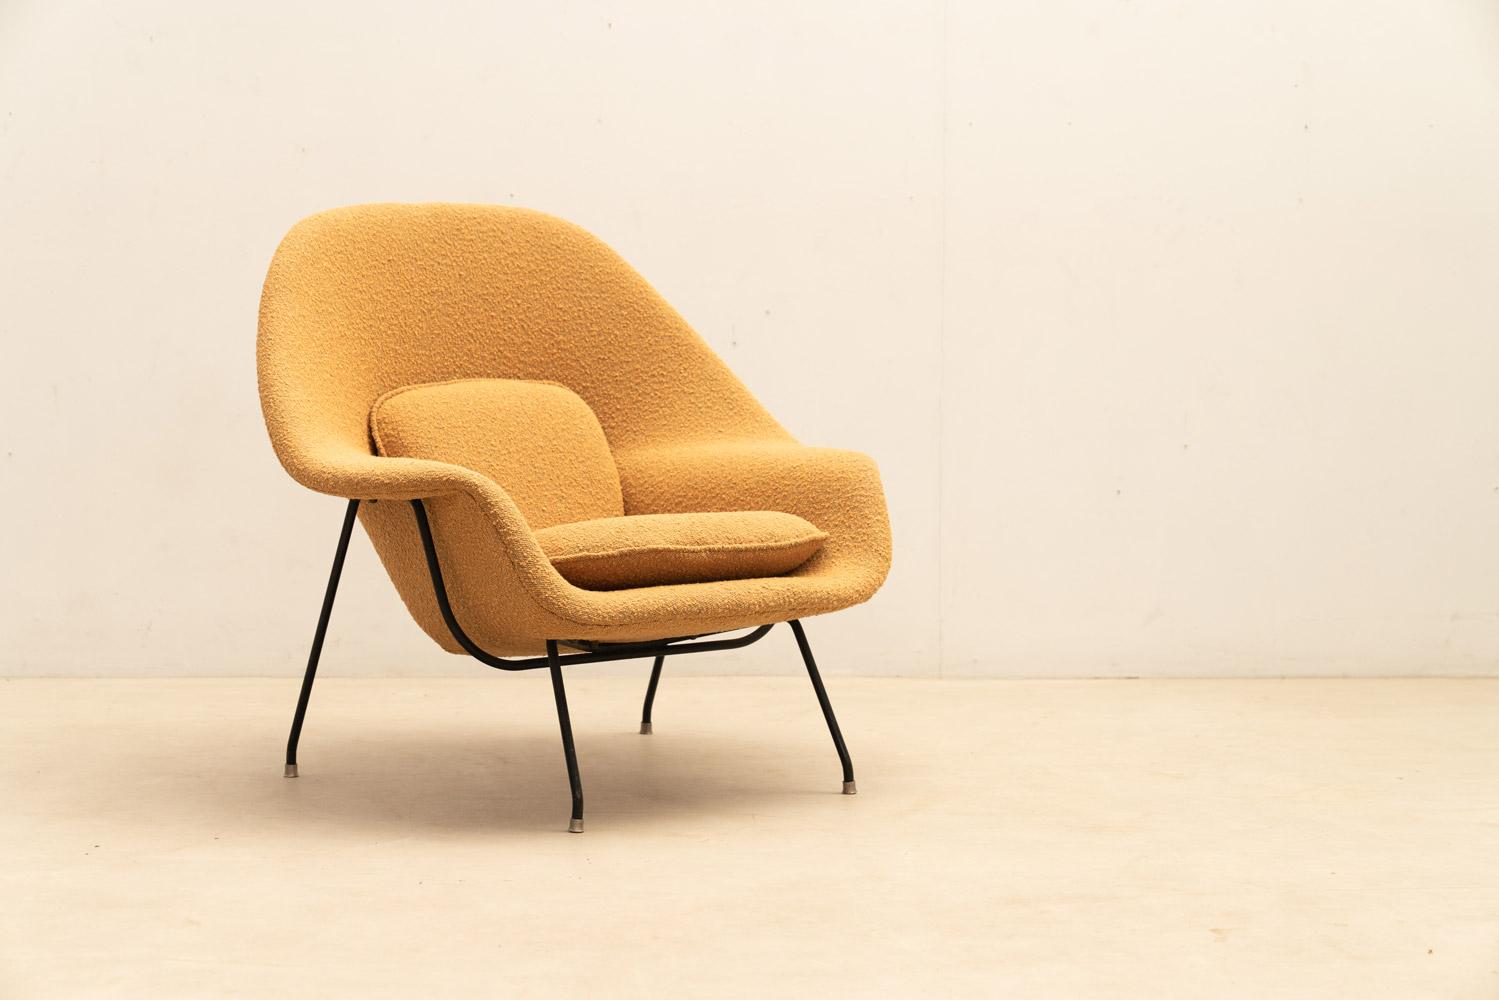 La chaise Womb, conçue par Eero Saarinen et produite par Icone dans les années 1950, est une icône du design du milieu du siècle. Ses courbes et sa forme redéfinissent le confort, offrant une détente dans n'importe quel espace. Récemment retapissé,